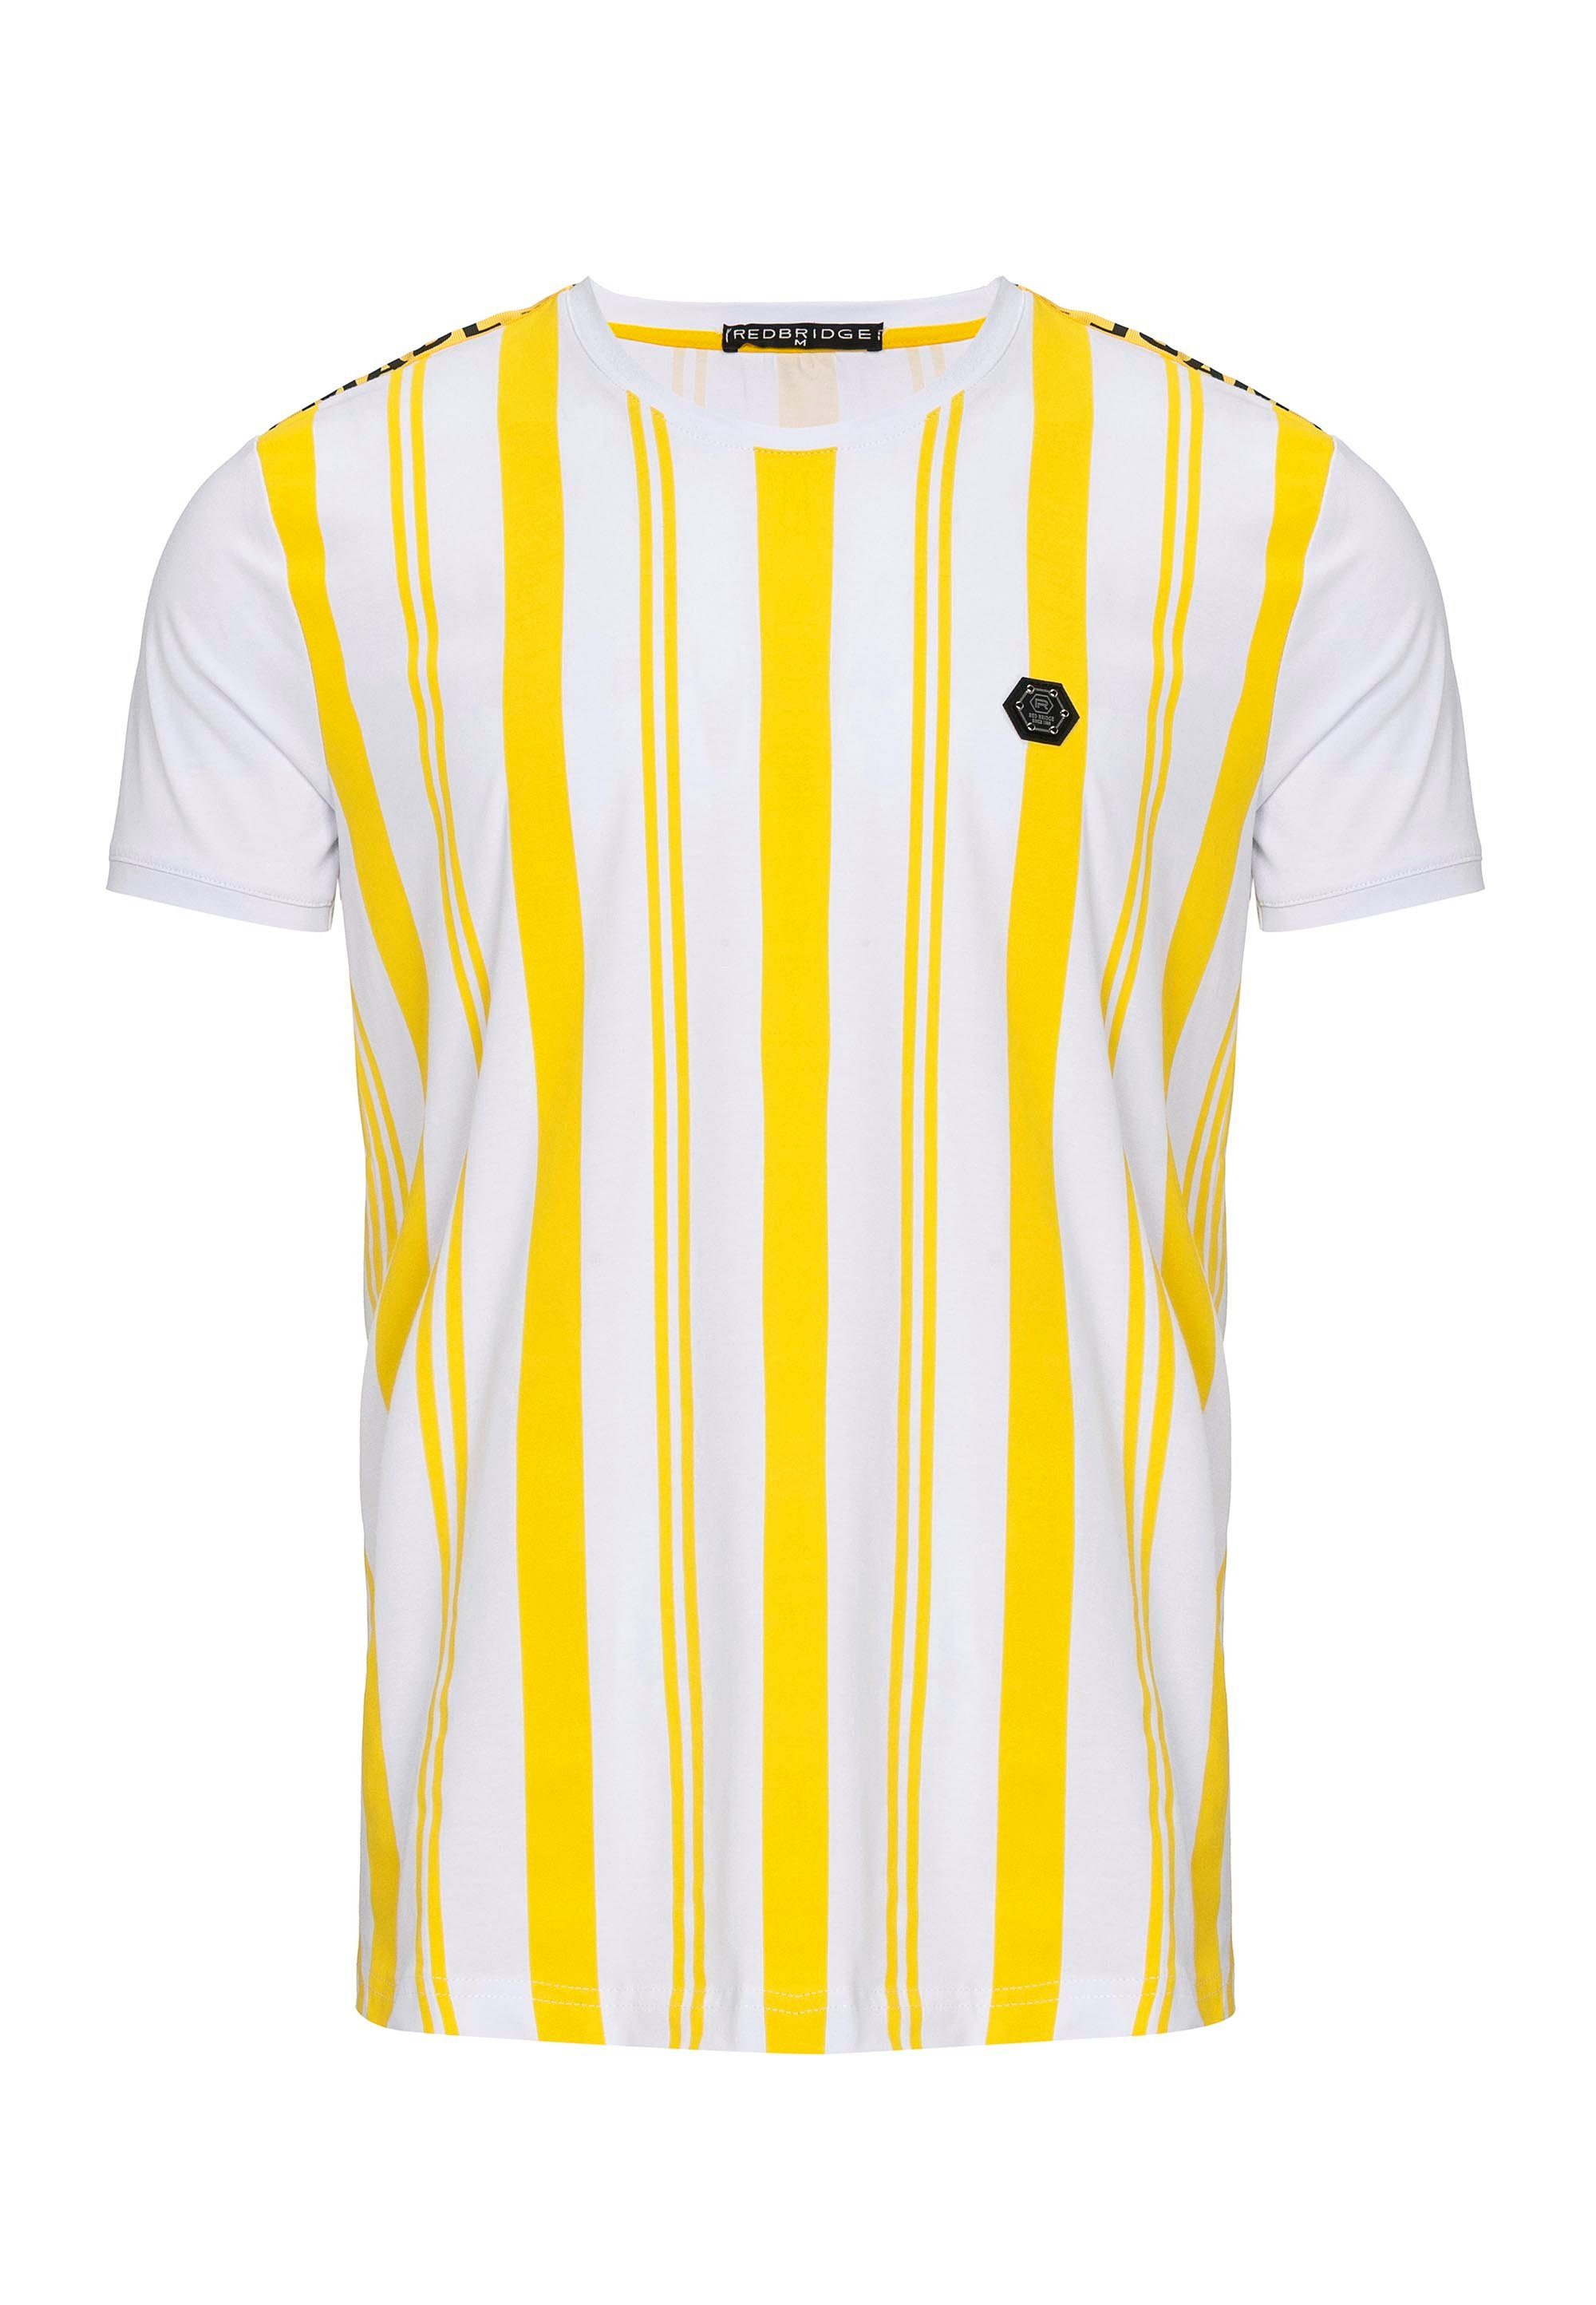 RedBridge gelb-weiß T-Shirt Summer mit Stripes Baltimore